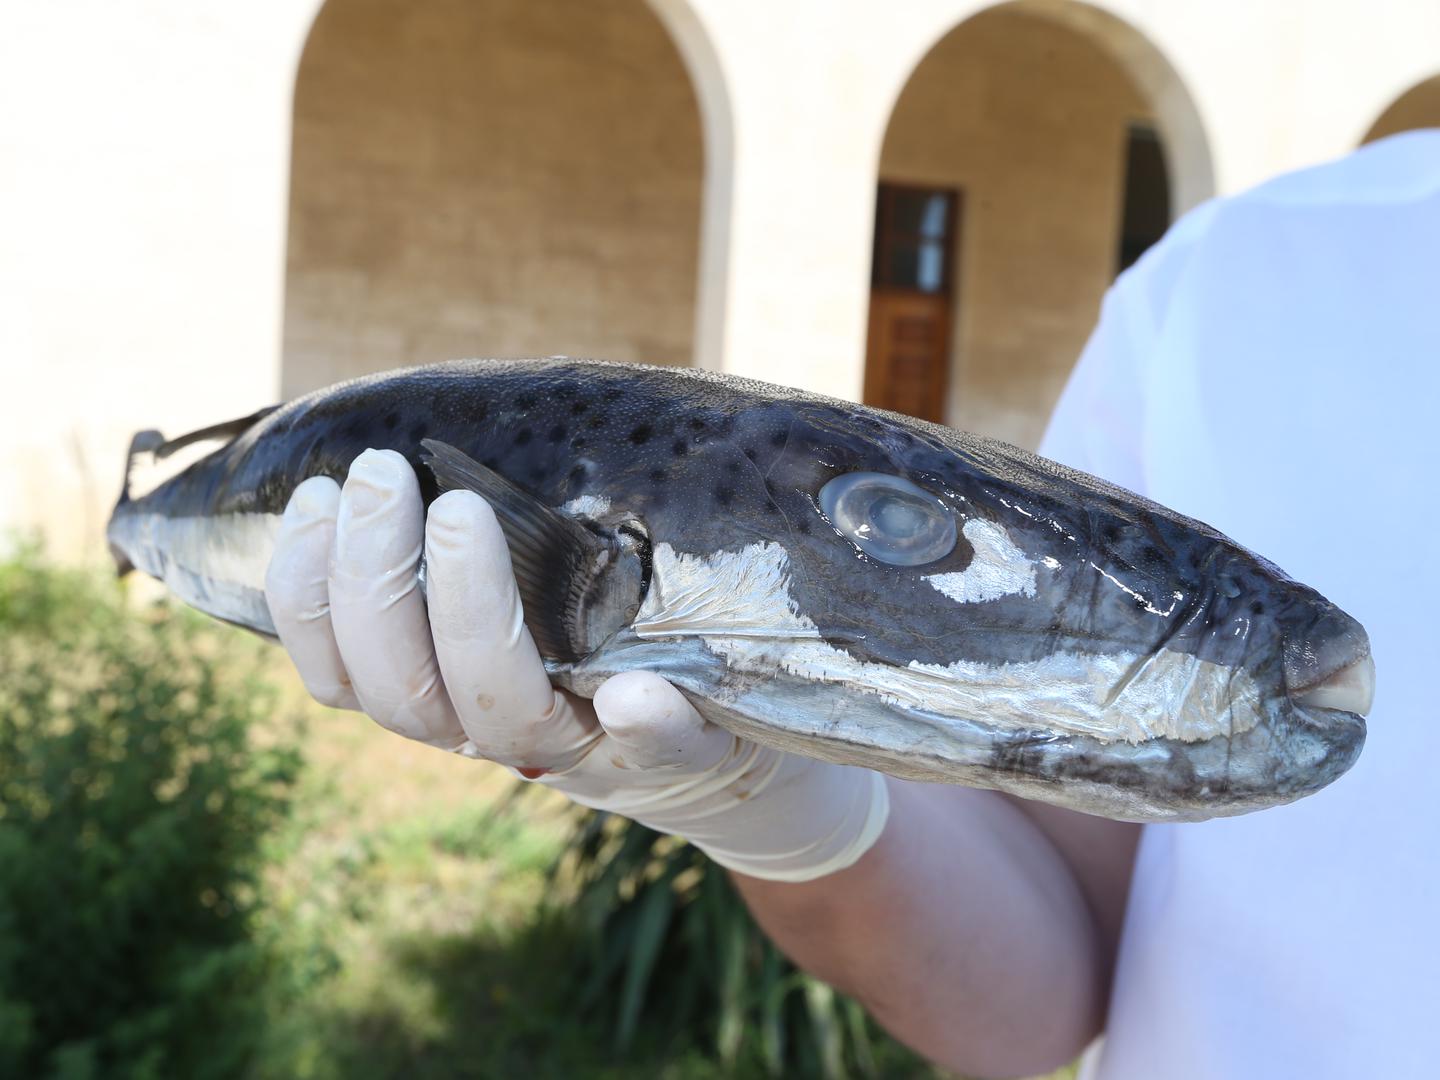 U Jadranu, u moru kod Rovinja, je otkrivena i srebrenopružna napuhača, jedna od od najotrovnijih riba na svijetu.